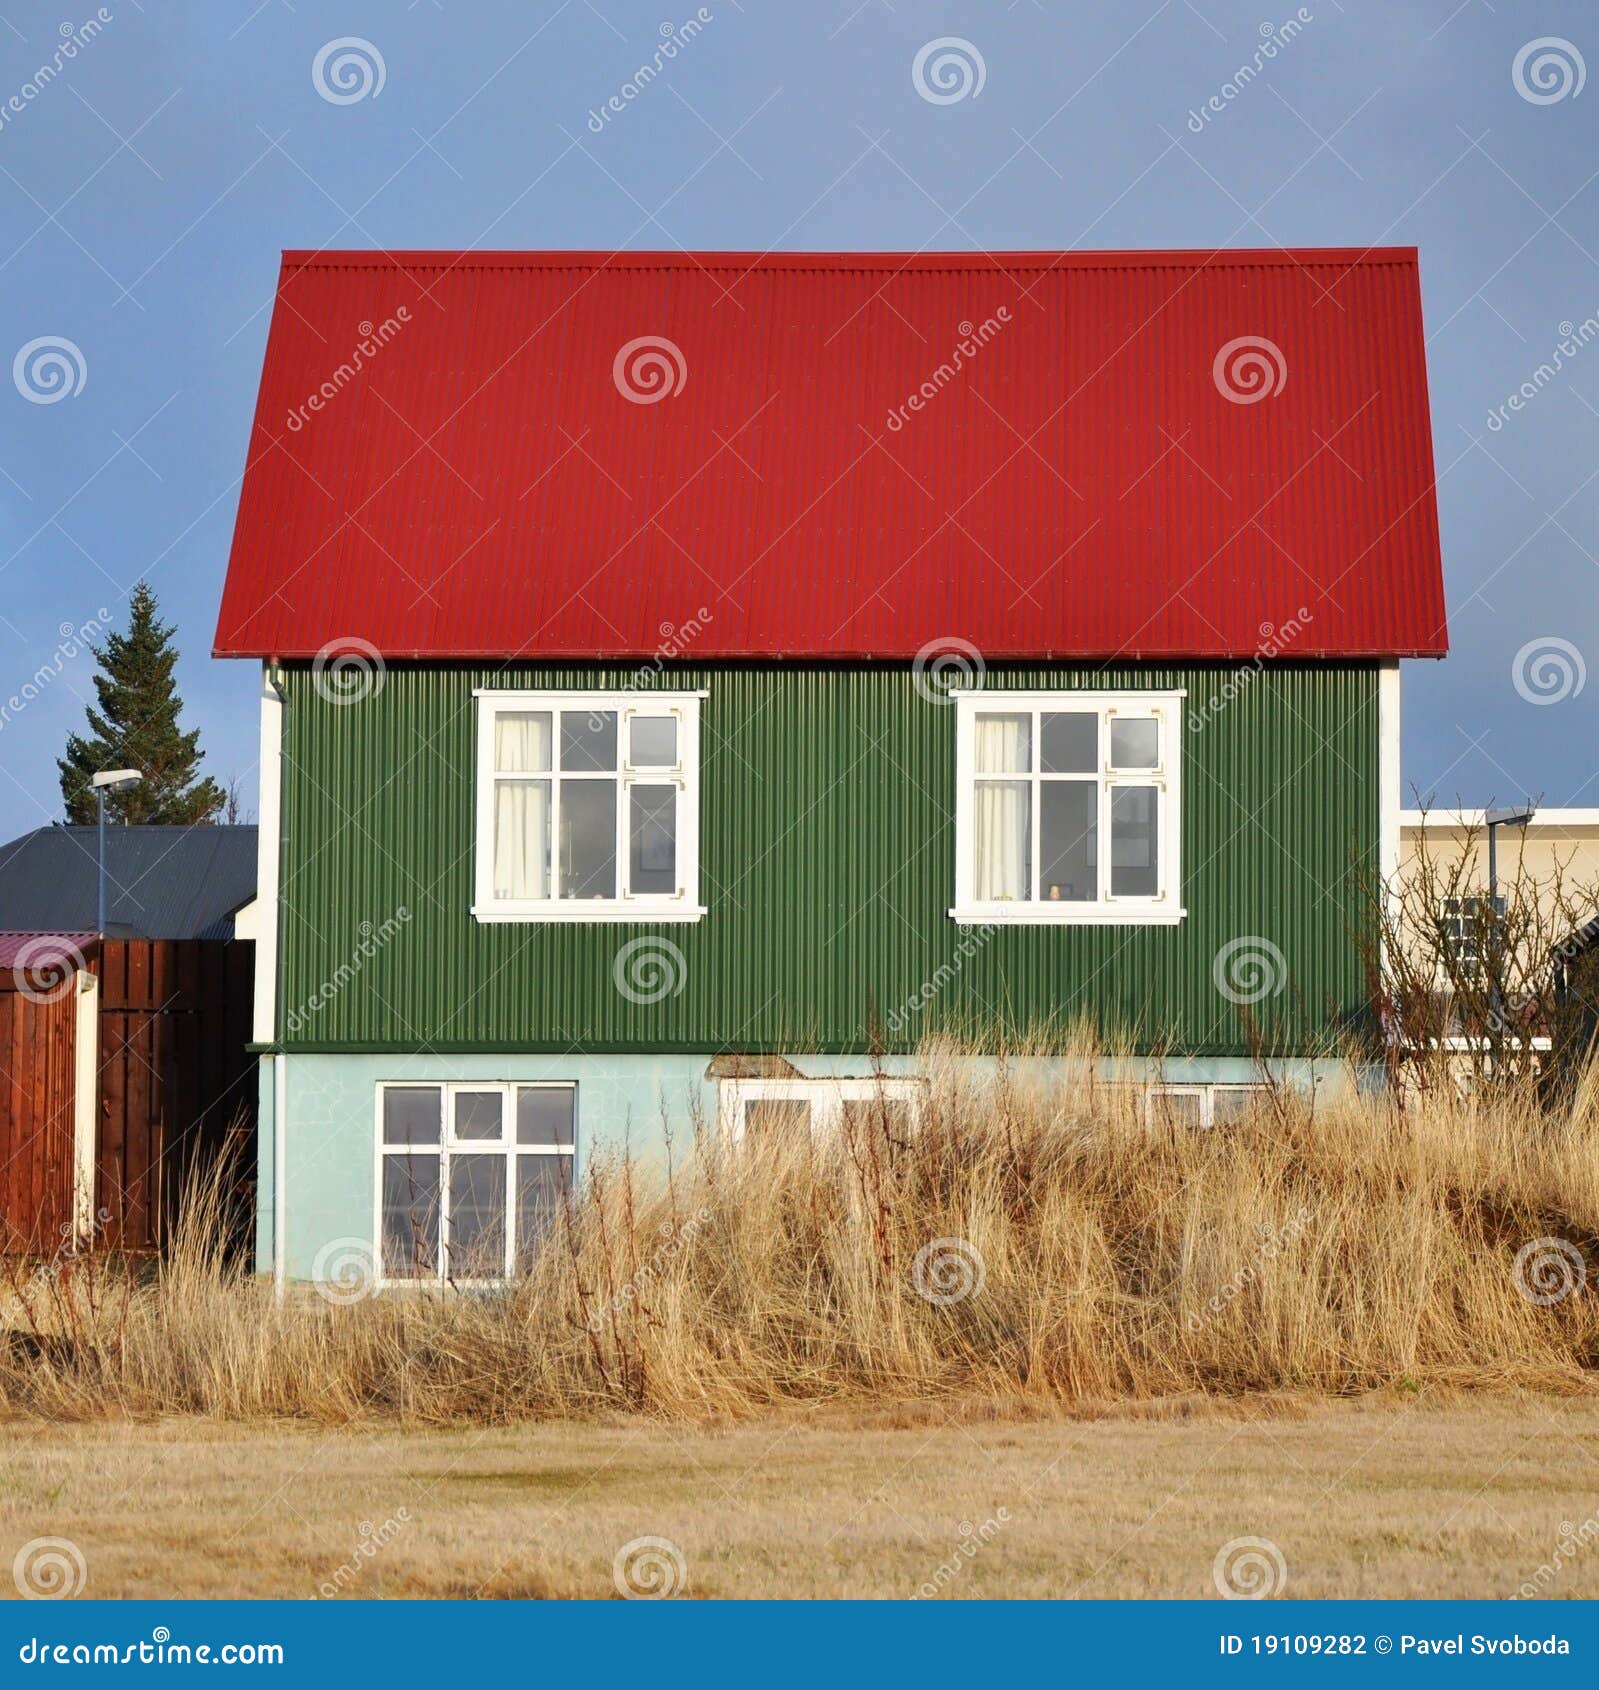 Resultado de imagen para imagenes de una casa verde y roja